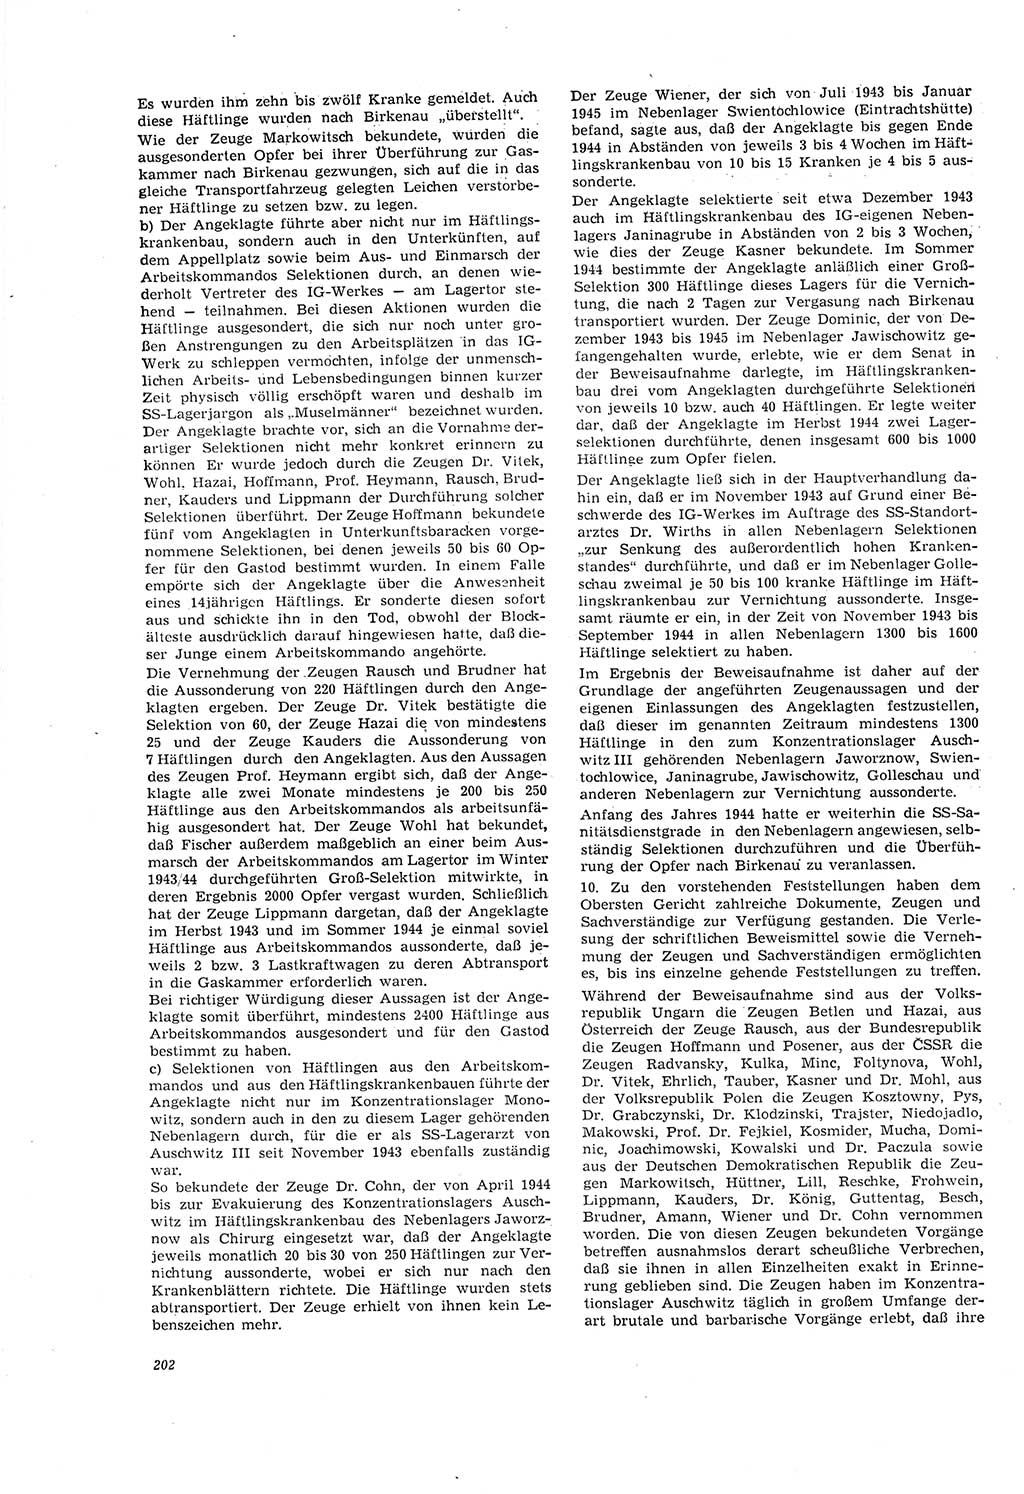 Neue Justiz (NJ), Zeitschrift für Recht und Rechtswissenschaft [Deutsche Demokratische Republik (DDR)], 20. Jahrgang 1966, Seite 202 (NJ DDR 1966, S. 202)